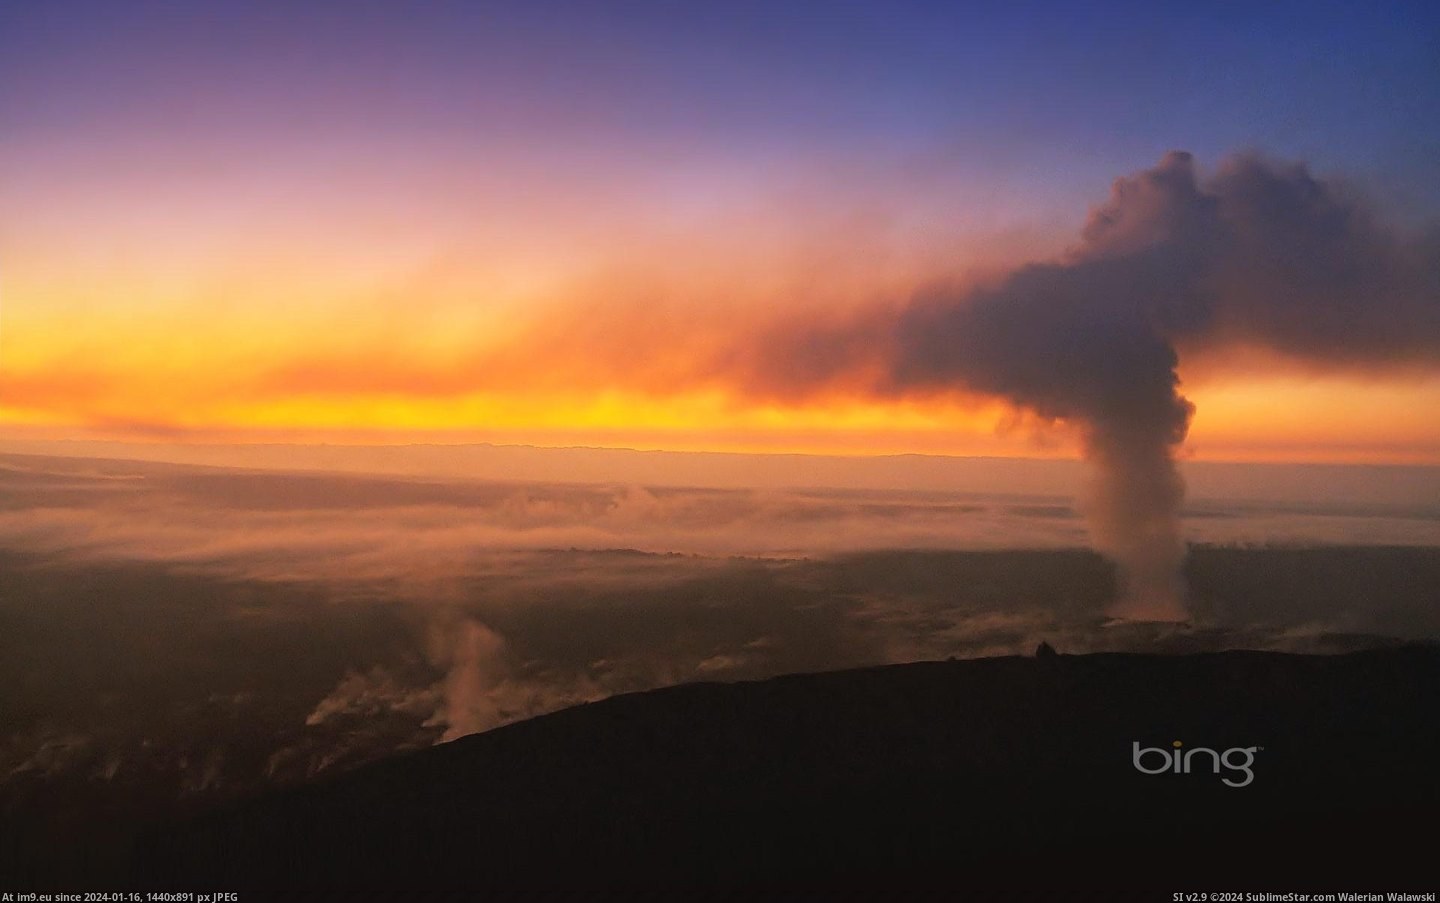 Sunset over Kilauea Volcano on the Big Island, Hawaii (in Bing Photos November 2012)